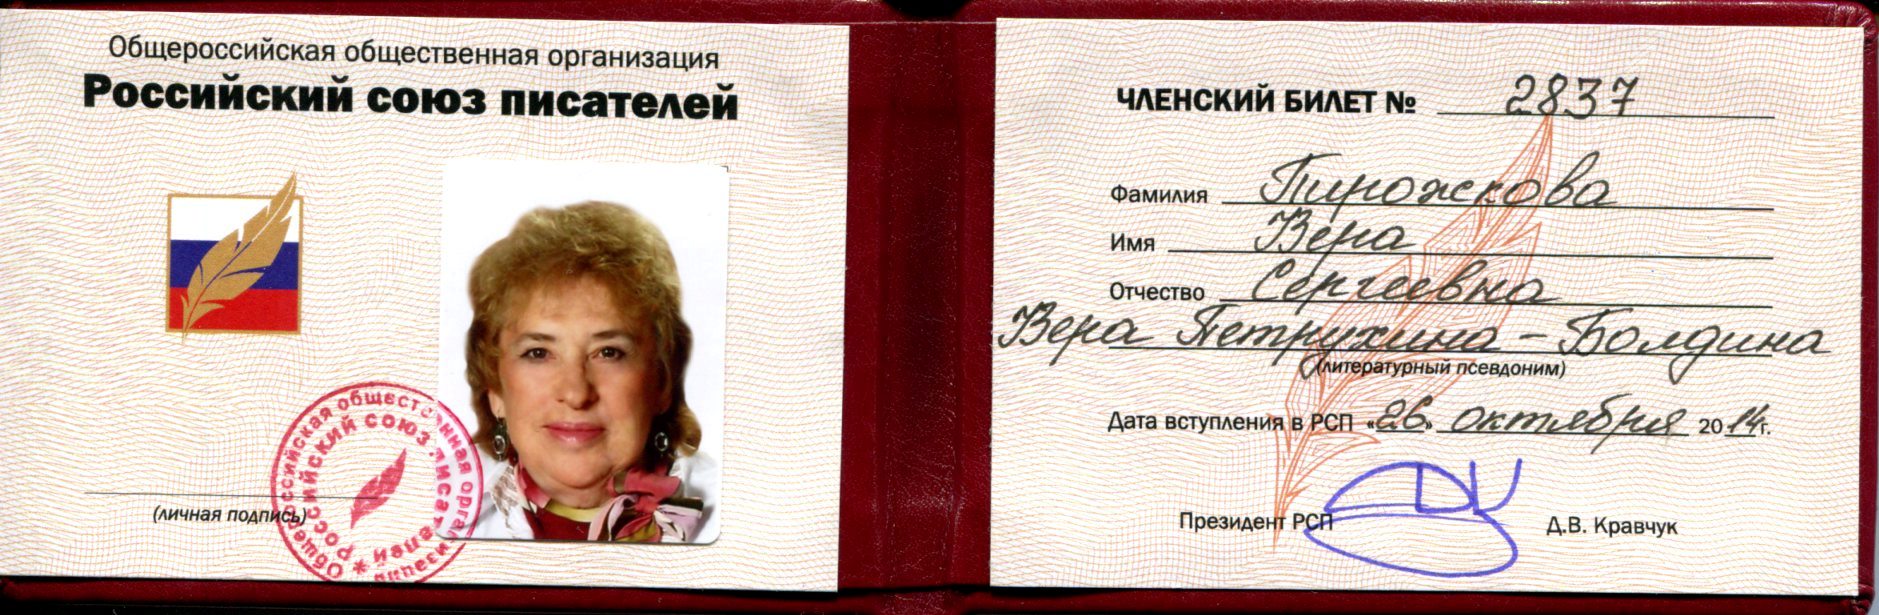 Членский билет Пирожковой В.С.